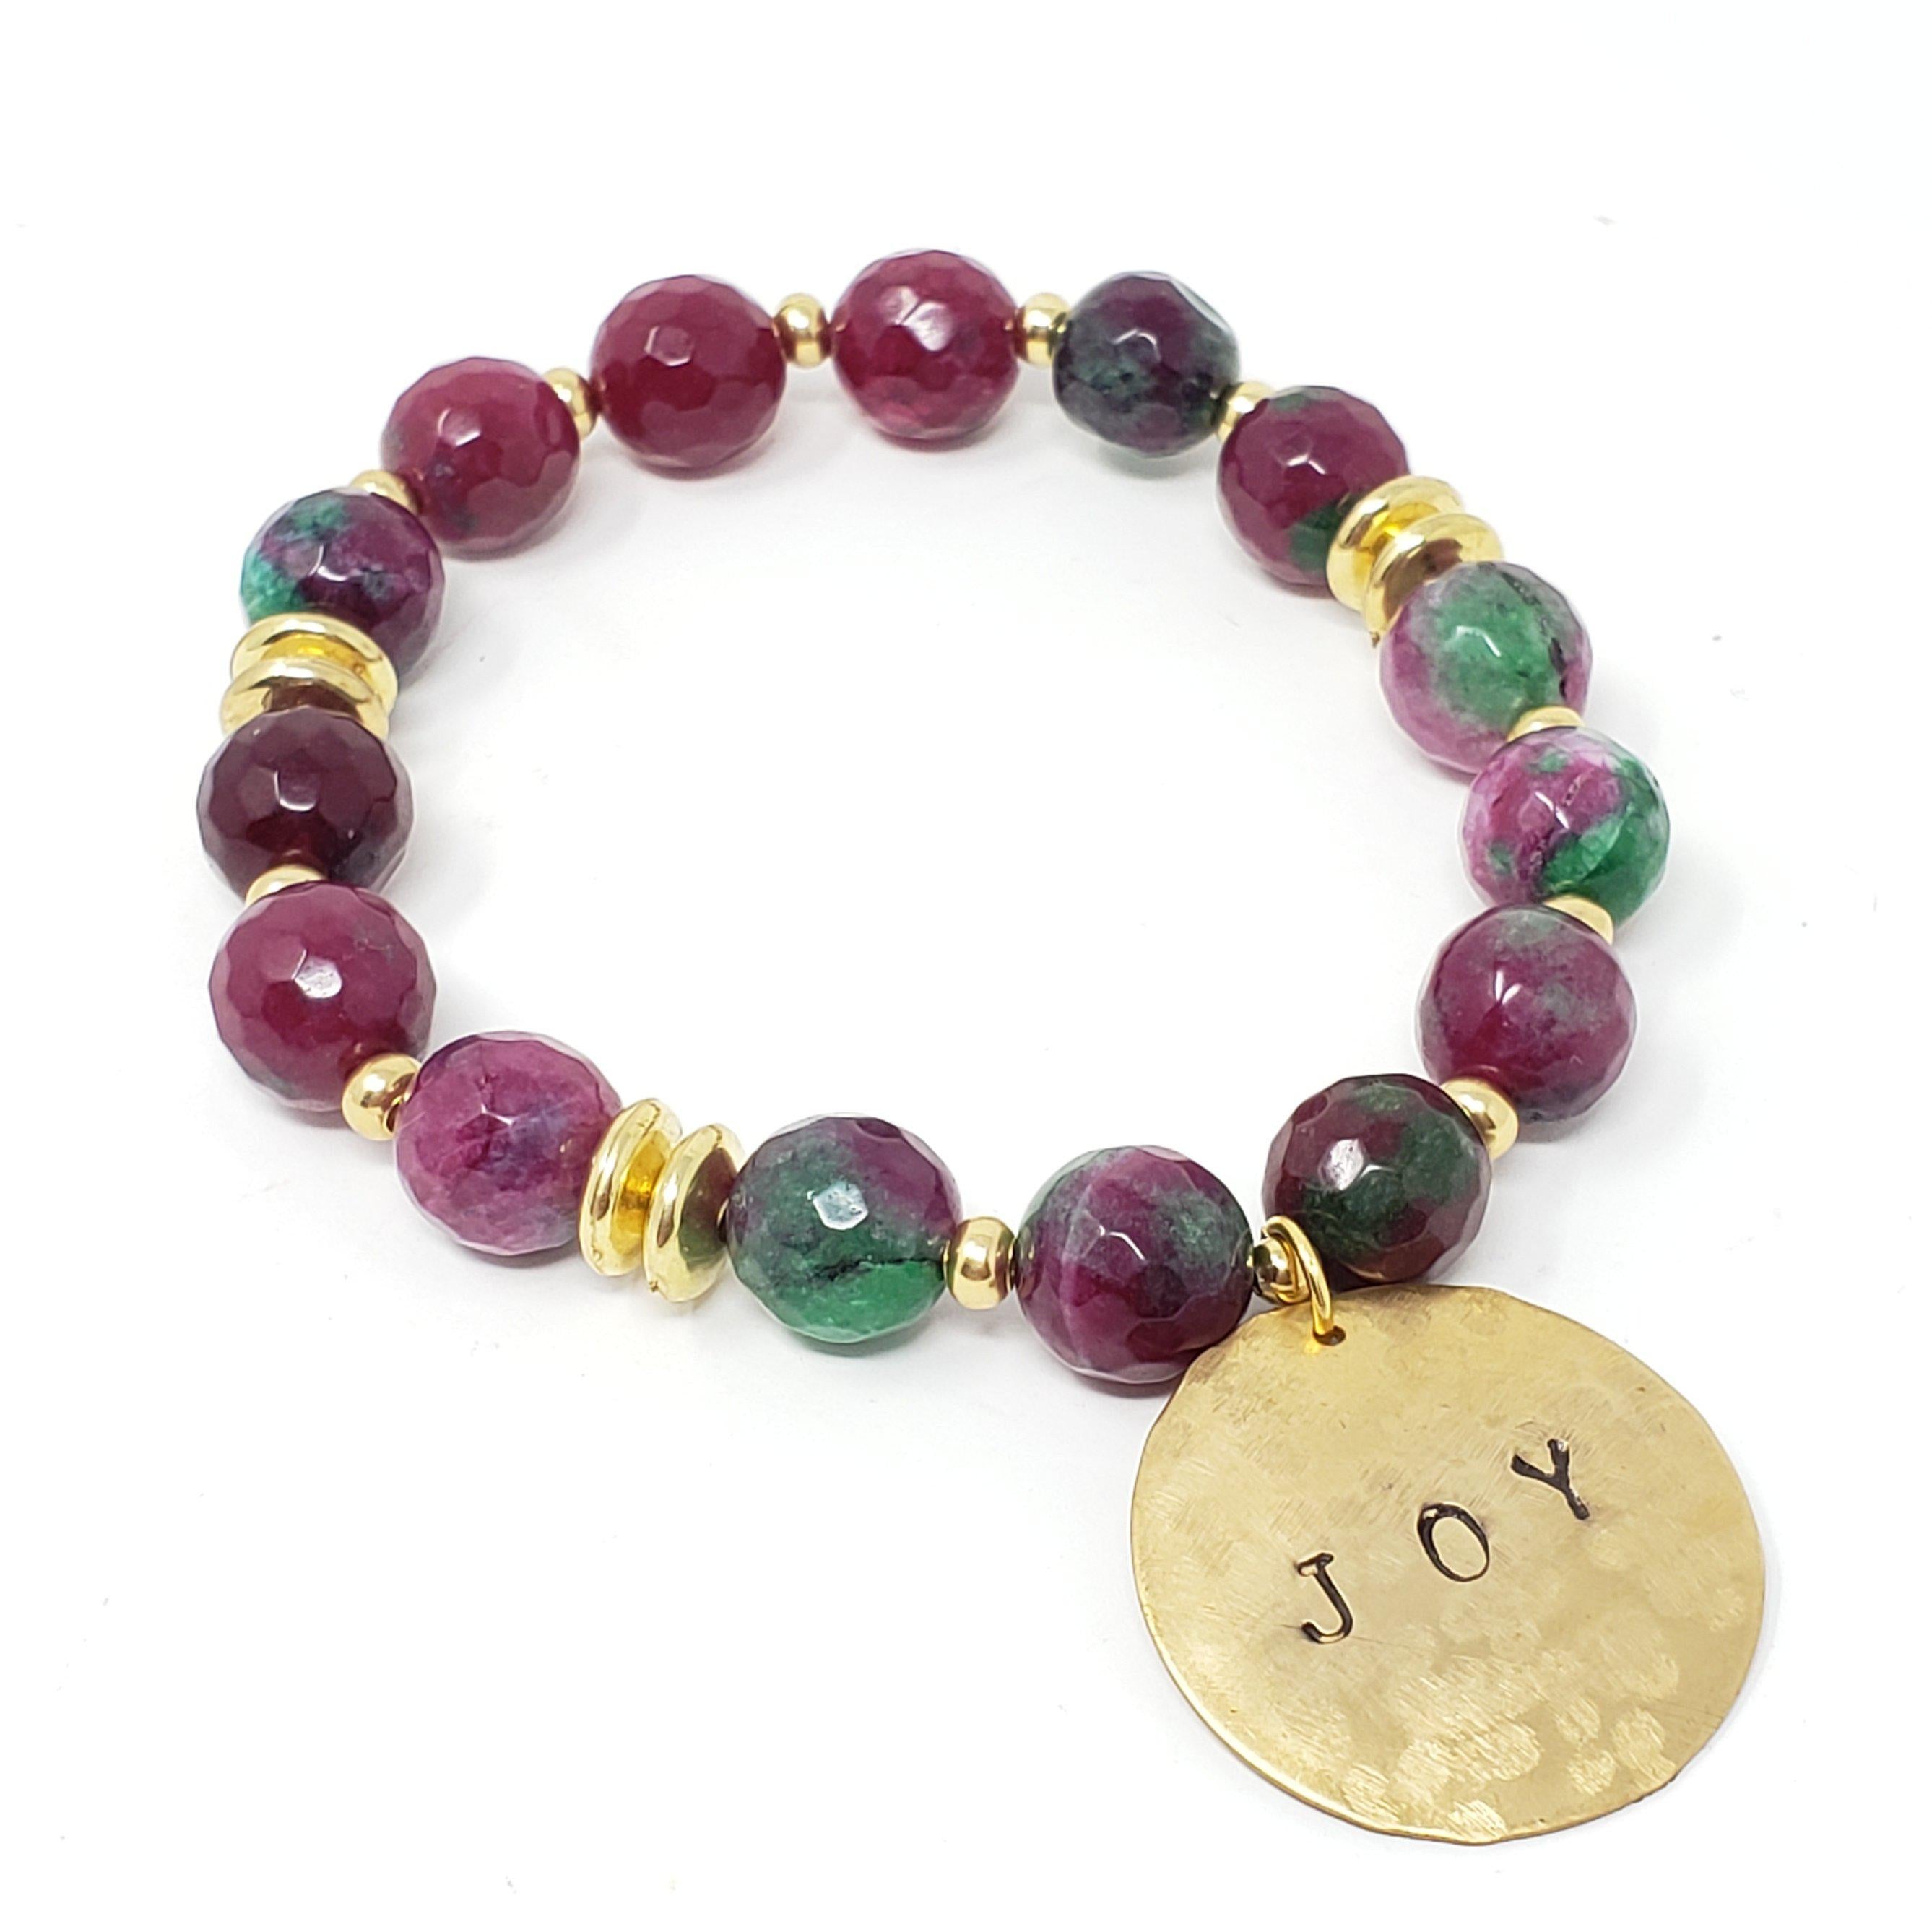 "I Am Joy" Affirmation Bracelets